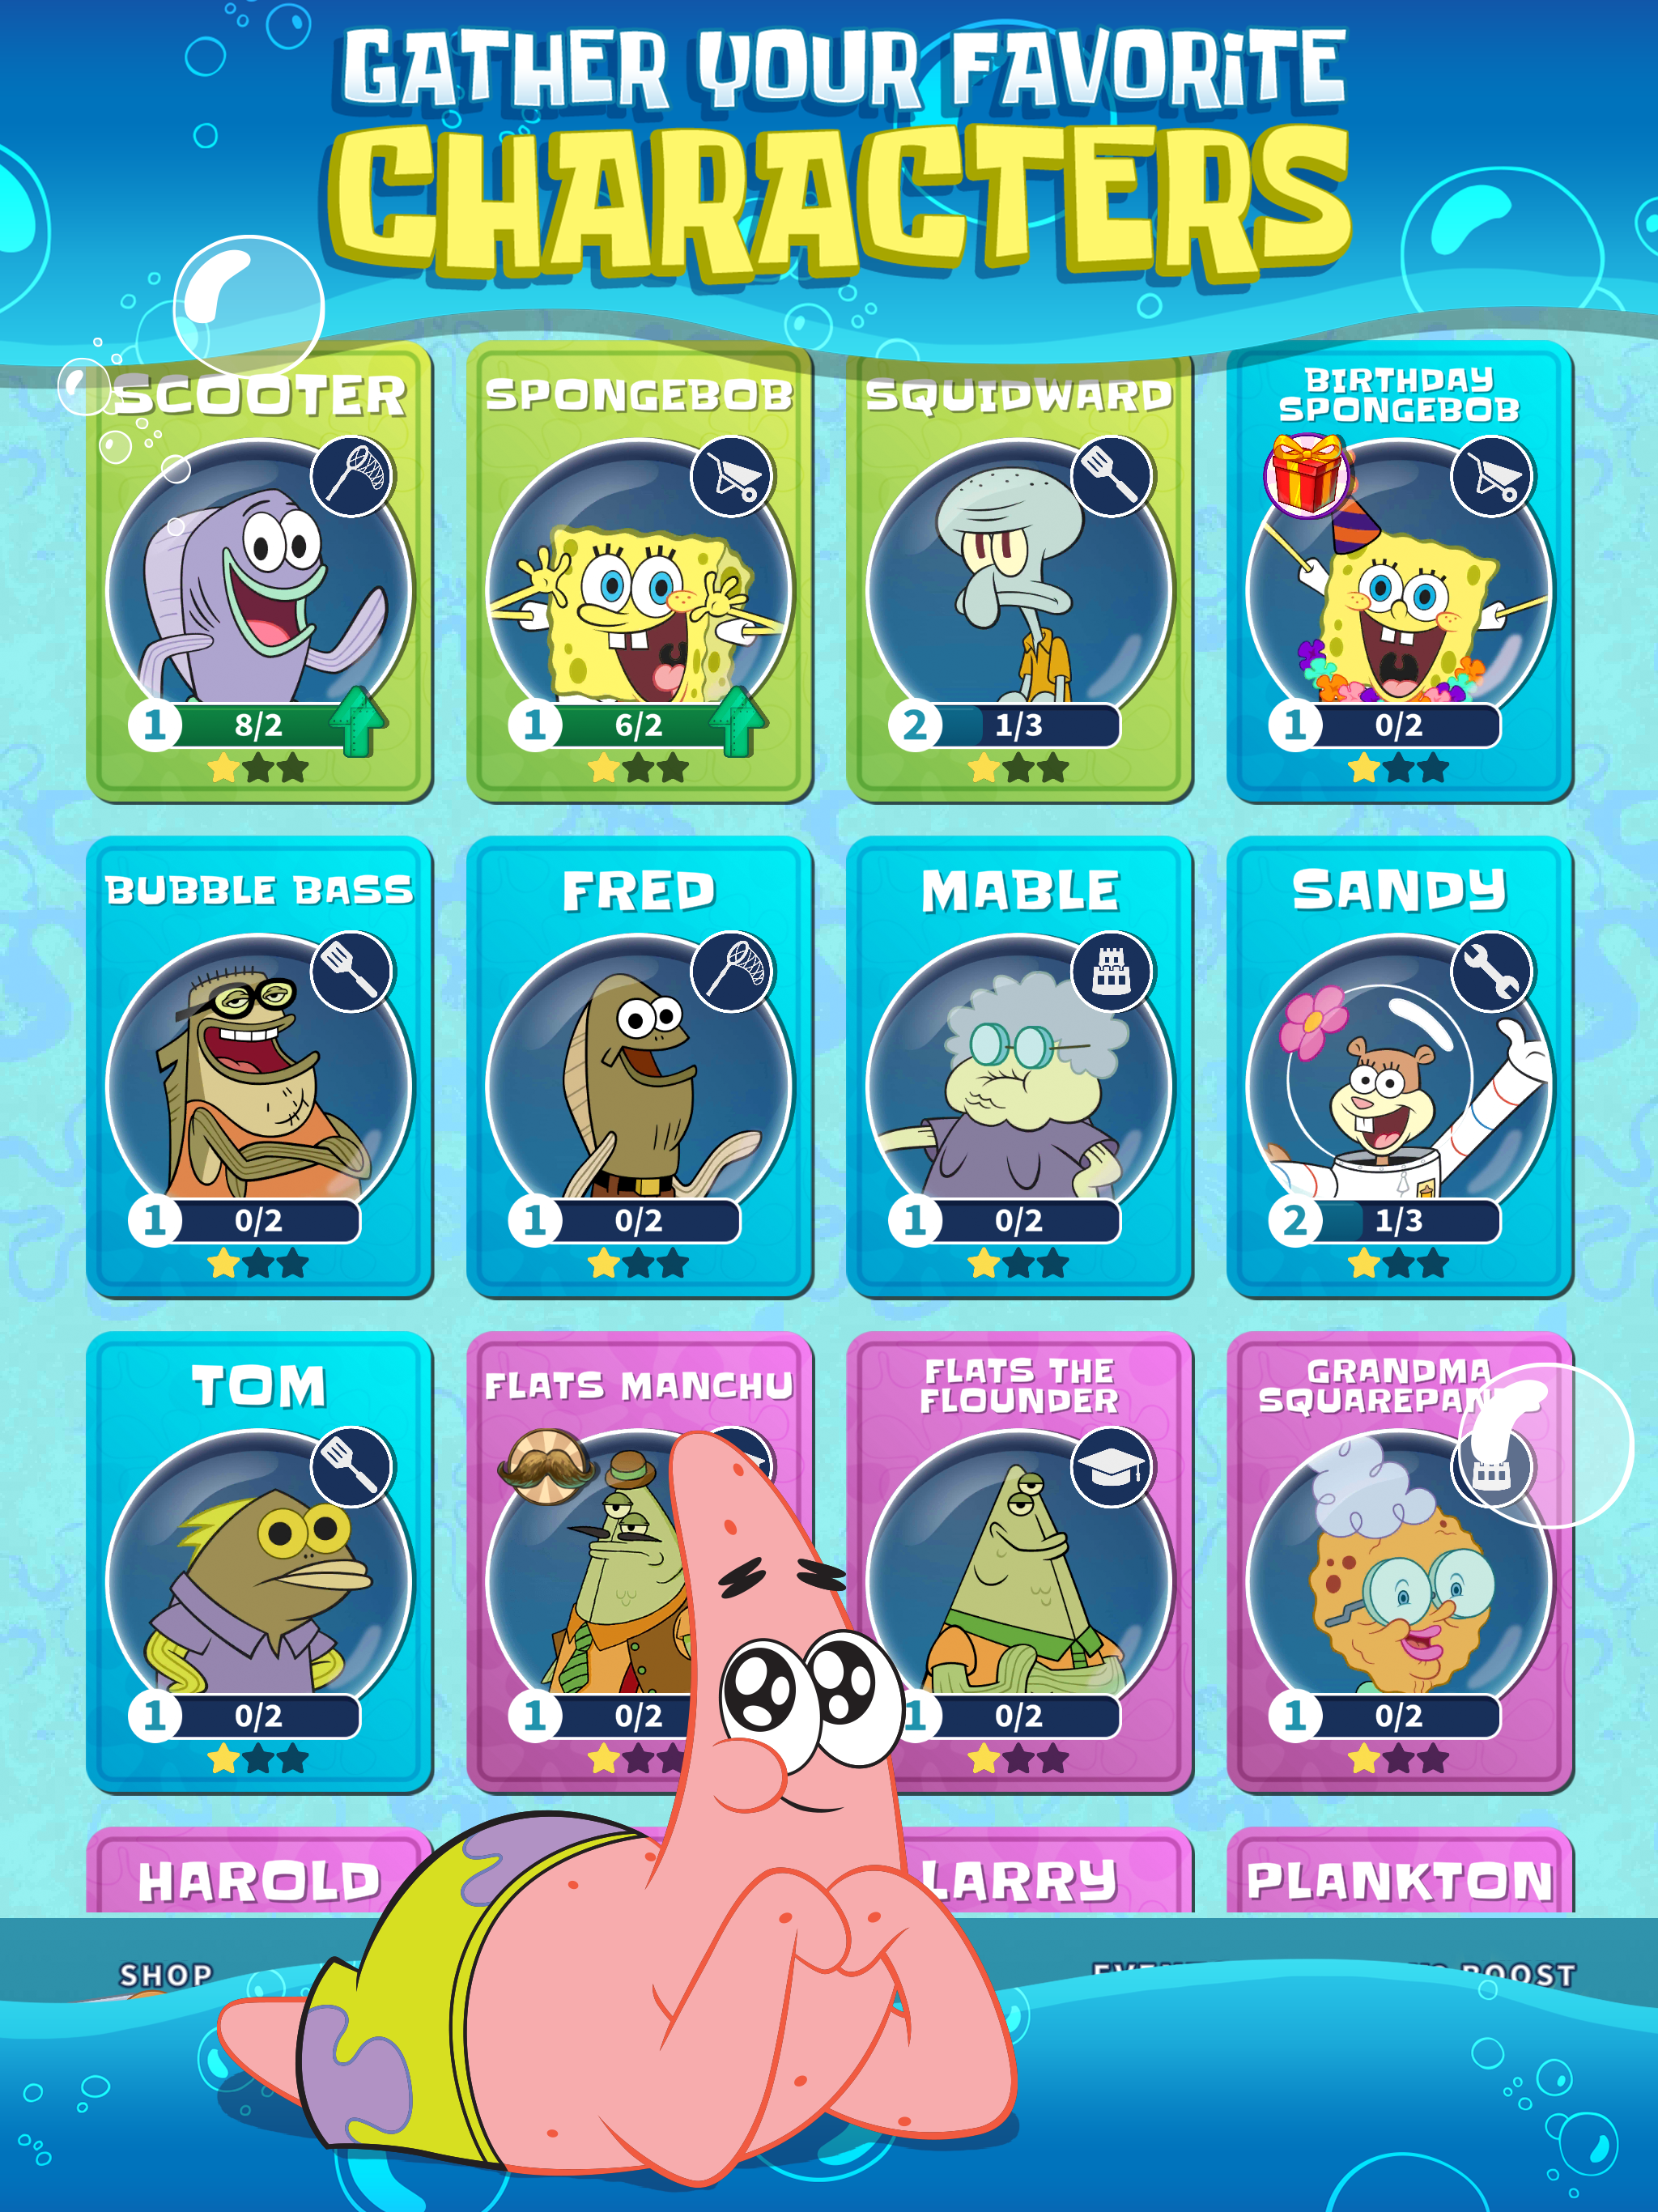 Screenshot of SpongeBob’s Idle Adventures